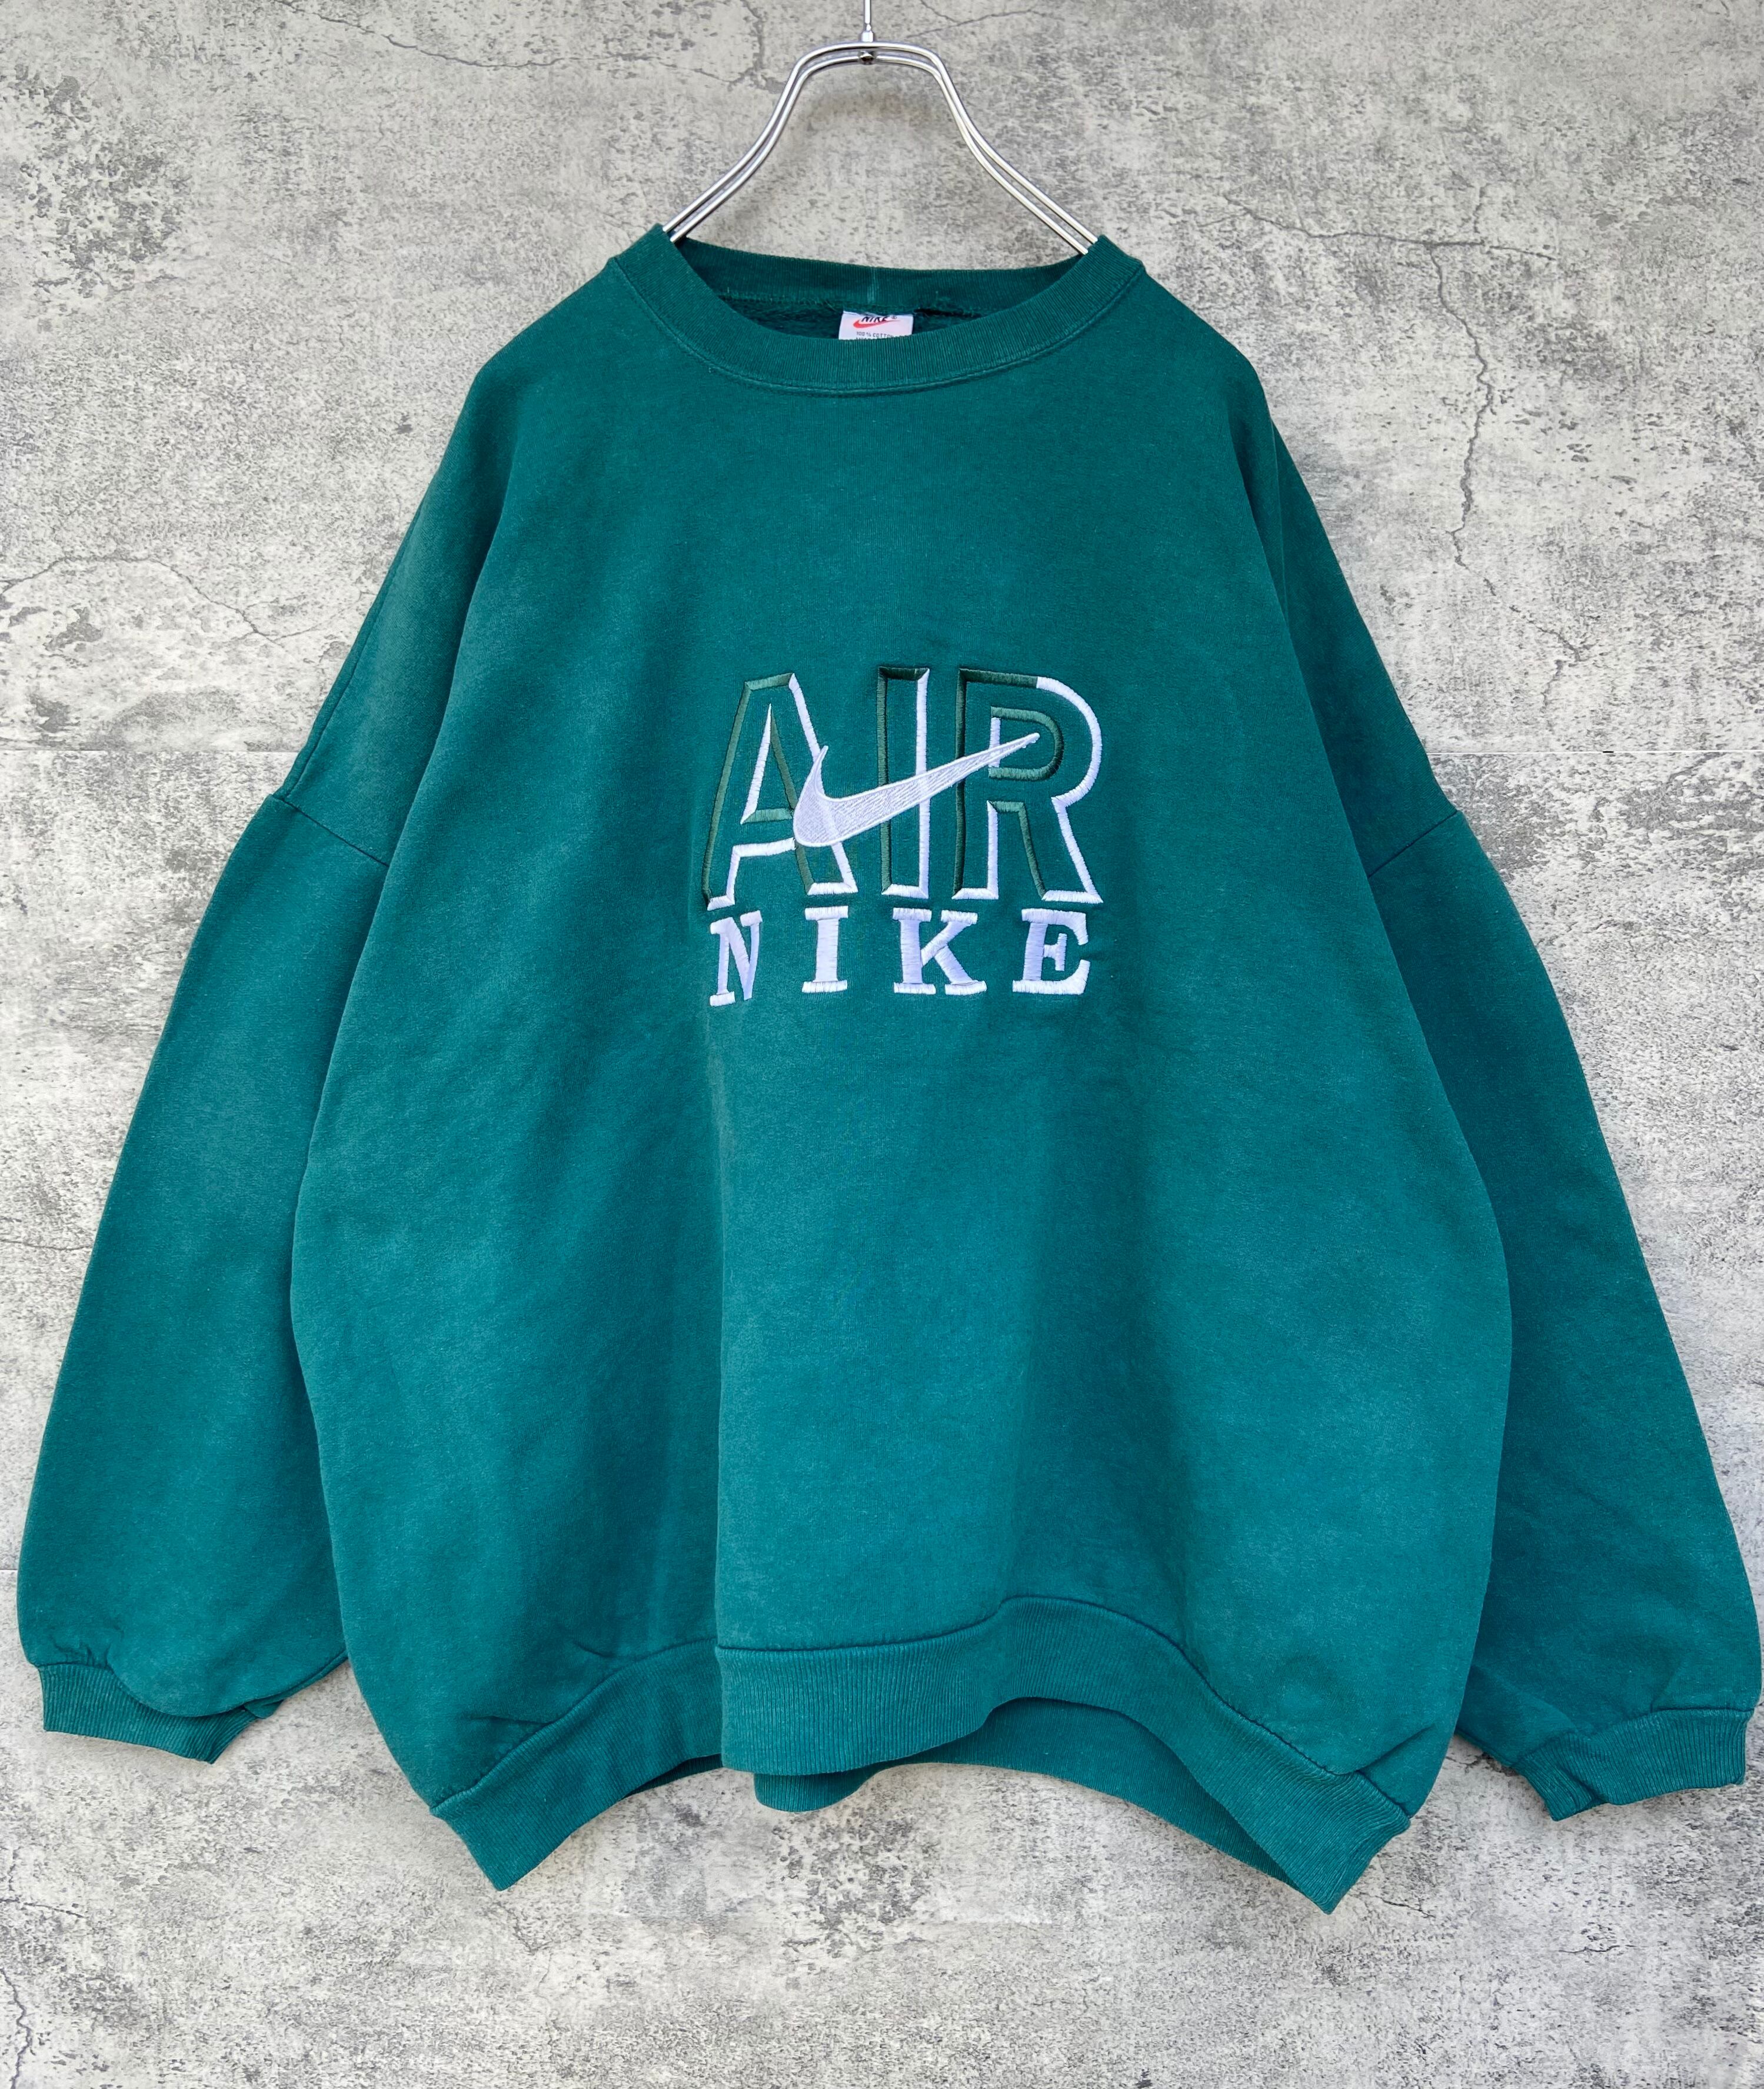 新品 NIKE ナイキ 刺繍スウォッシュ XL スウェット 緑 オーバーサイズ